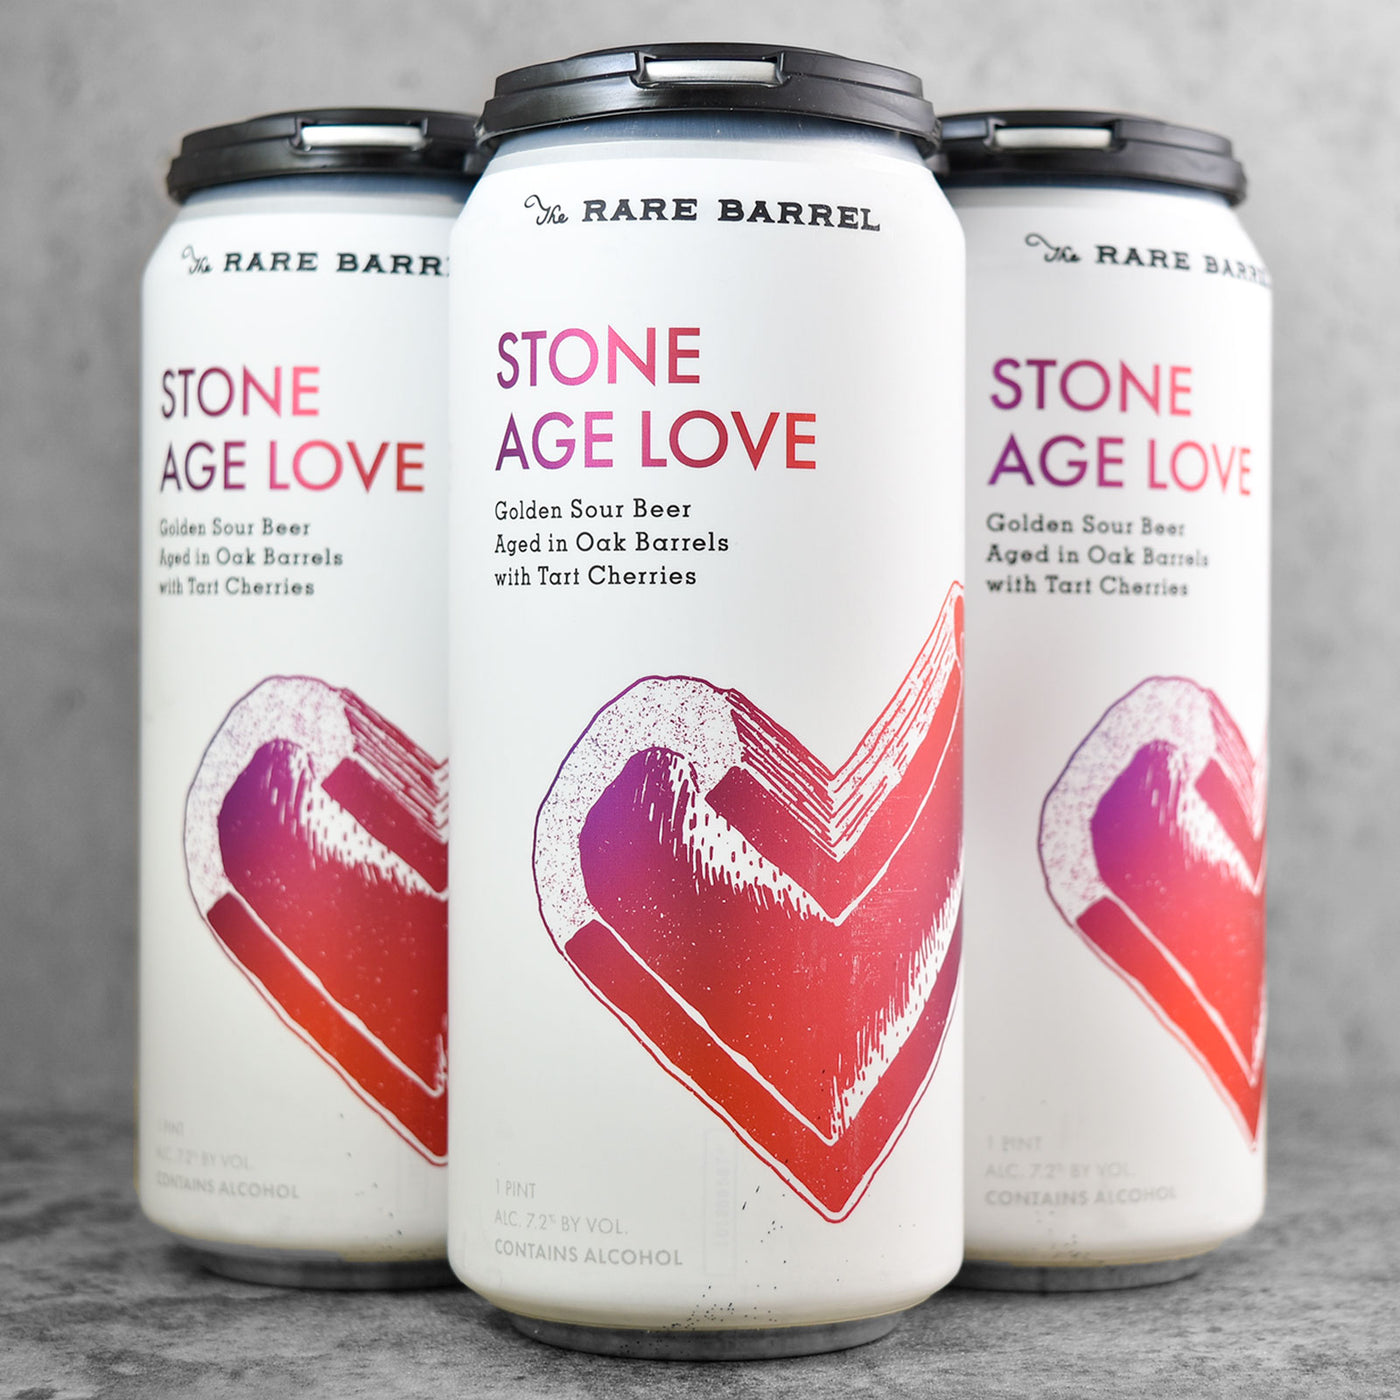 The Rare Barrel Stone Age Love